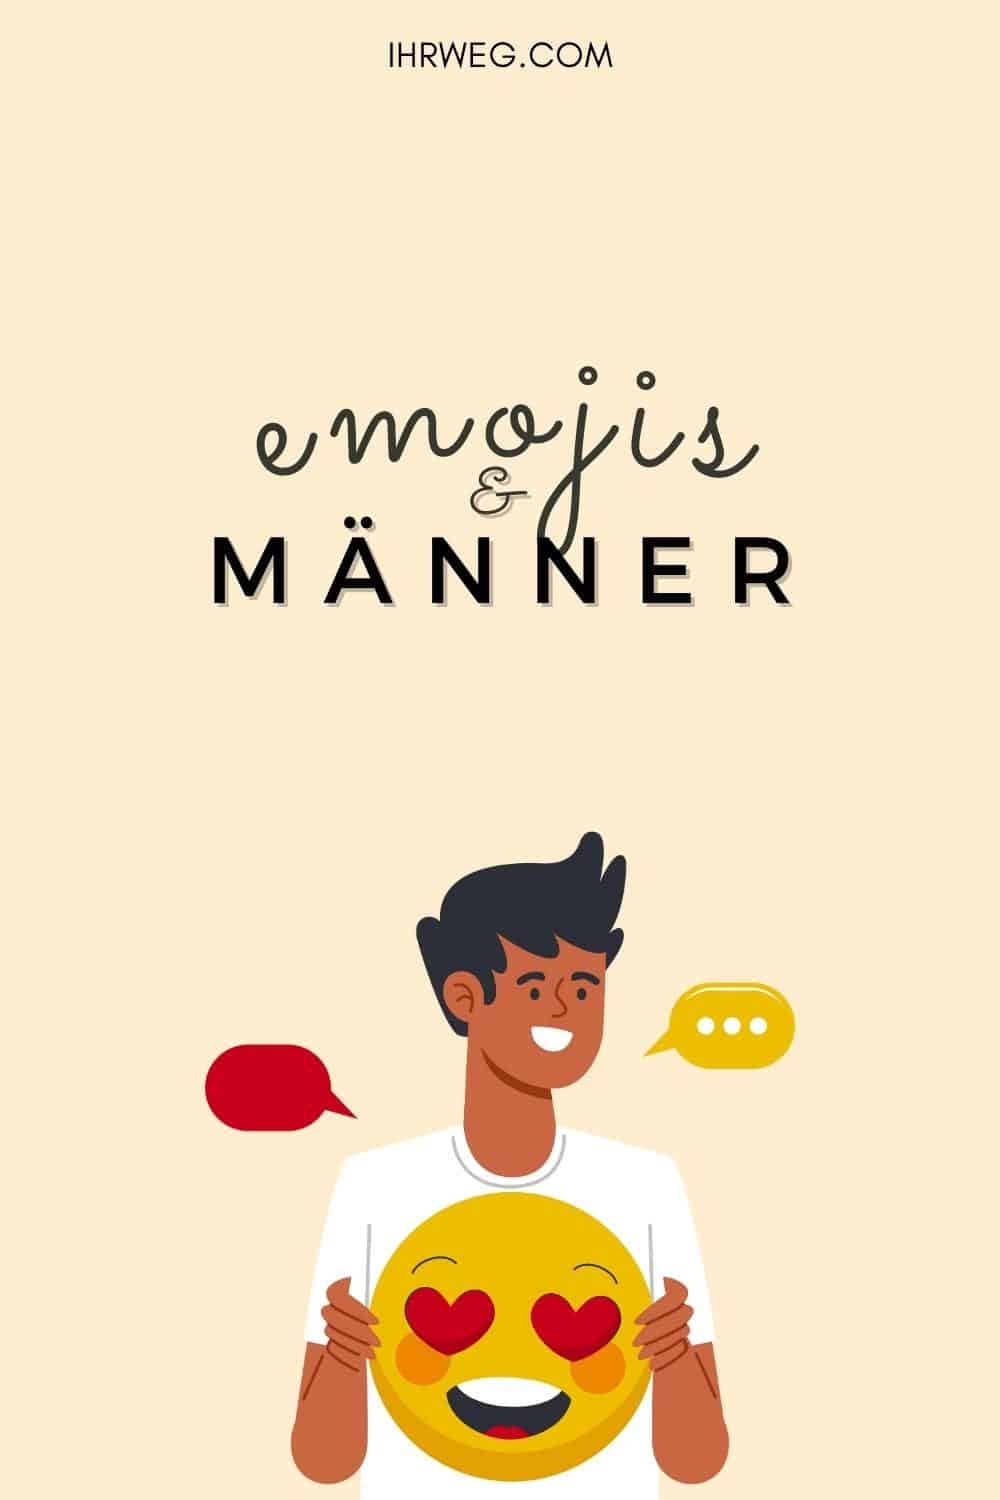 Männer und Emojis: Bedeutung hinter virtuellen Gesichtern